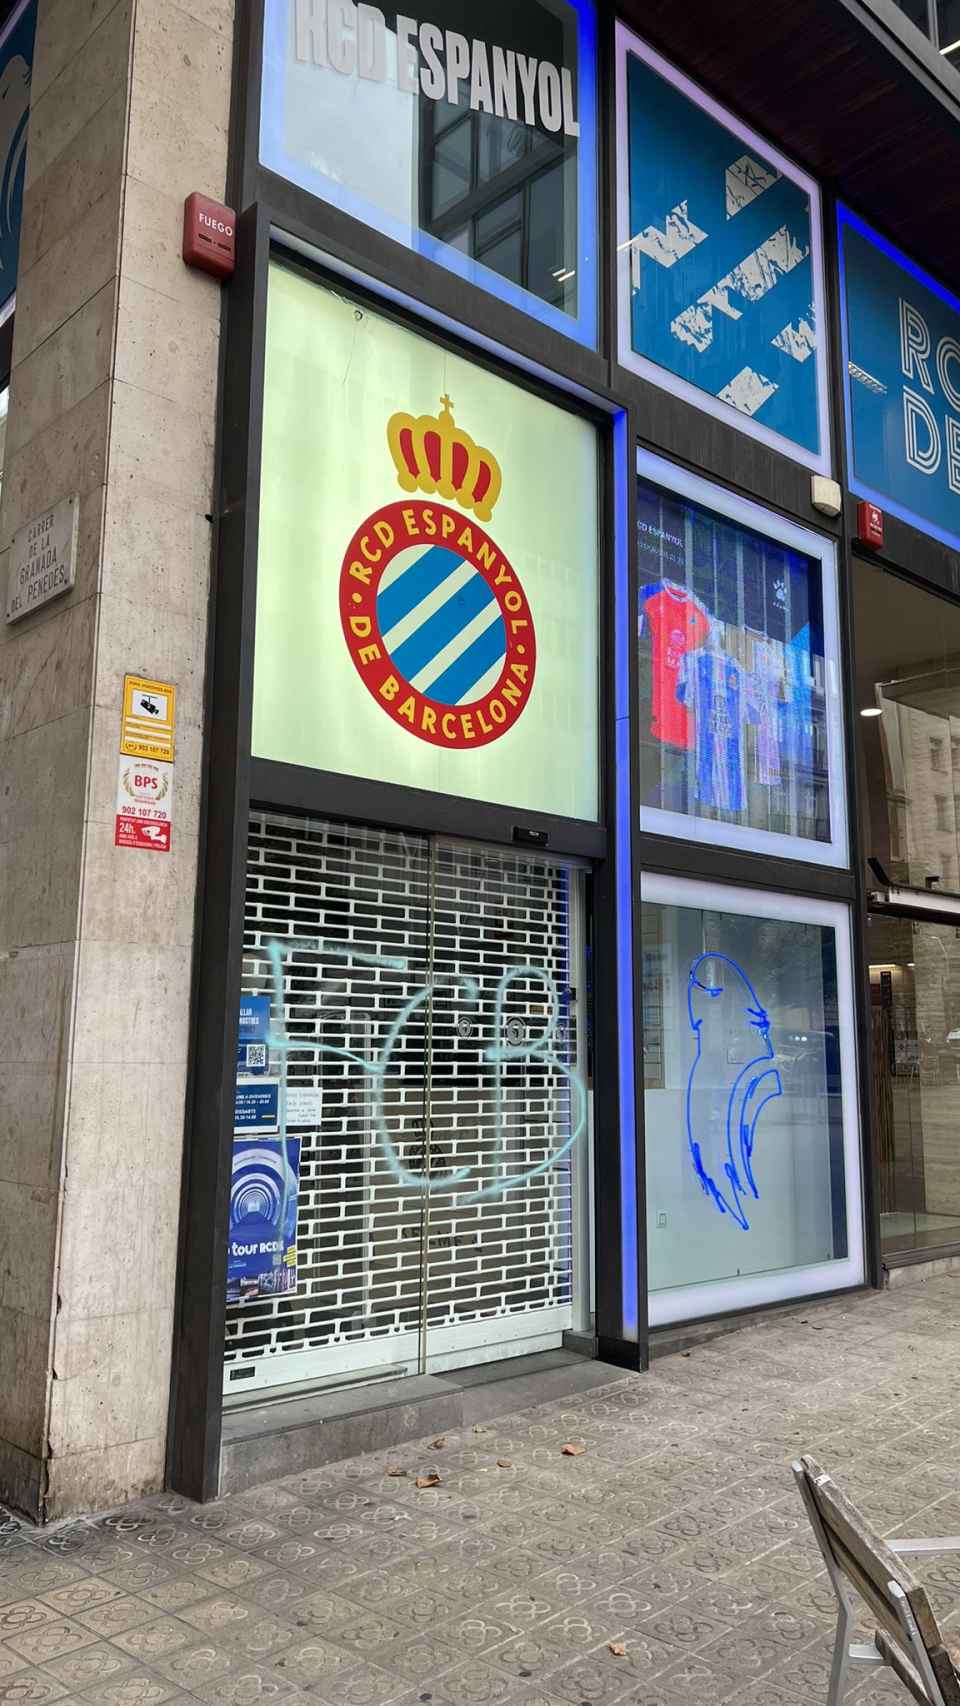 La fachada exterior de la tienda del Espanyol con pintadas del Barça